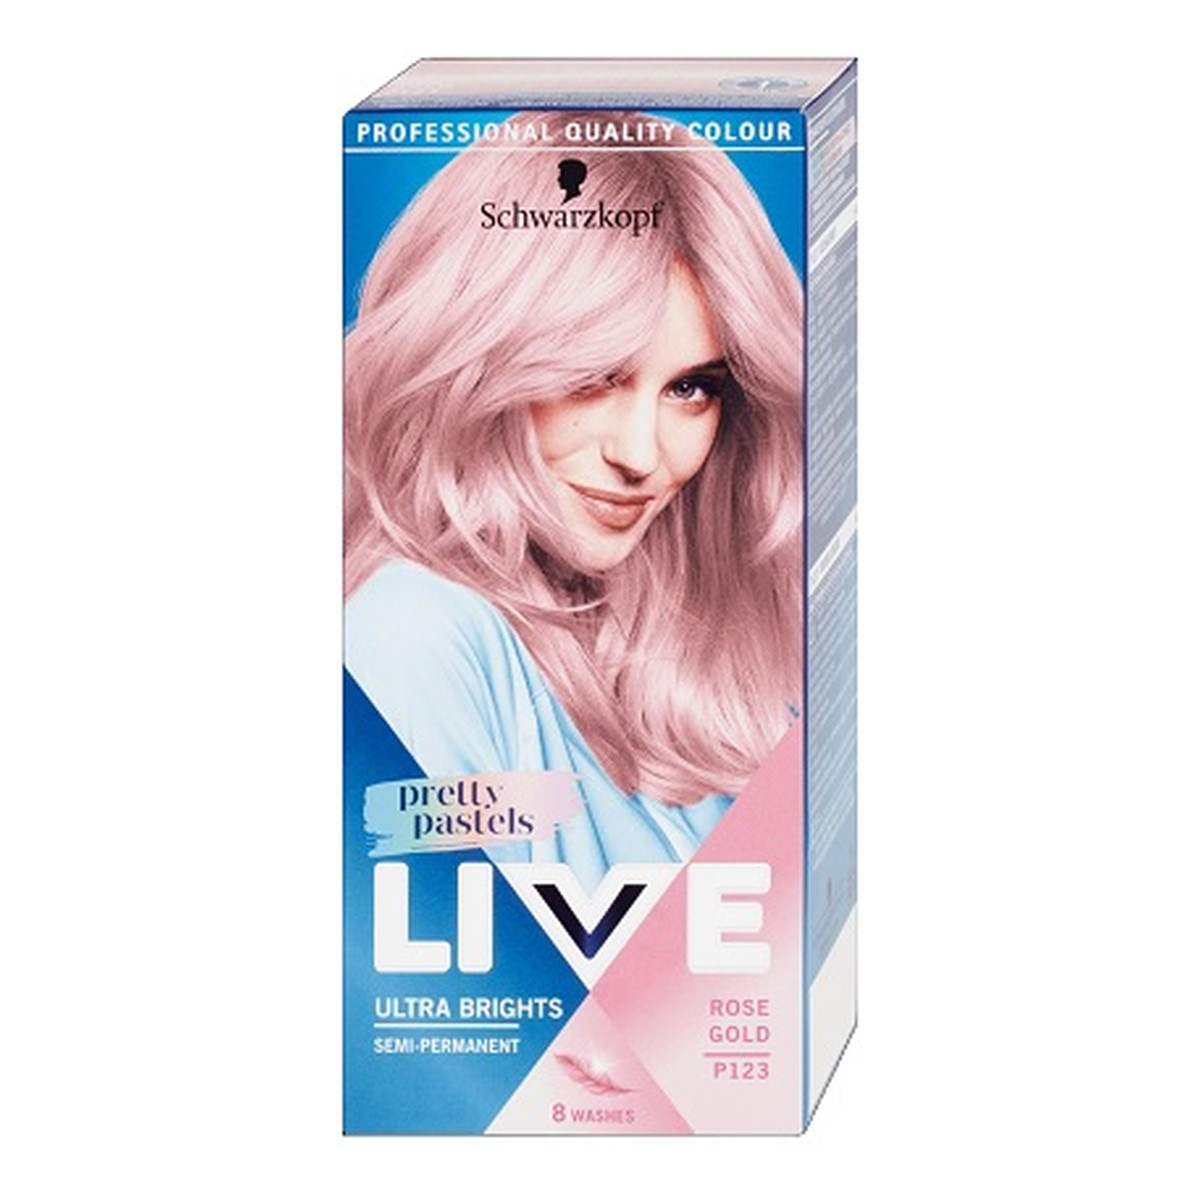 Schwarzkopf Live ultra brights pretty pastels farba do włosów do 8 myć p123 rose gold